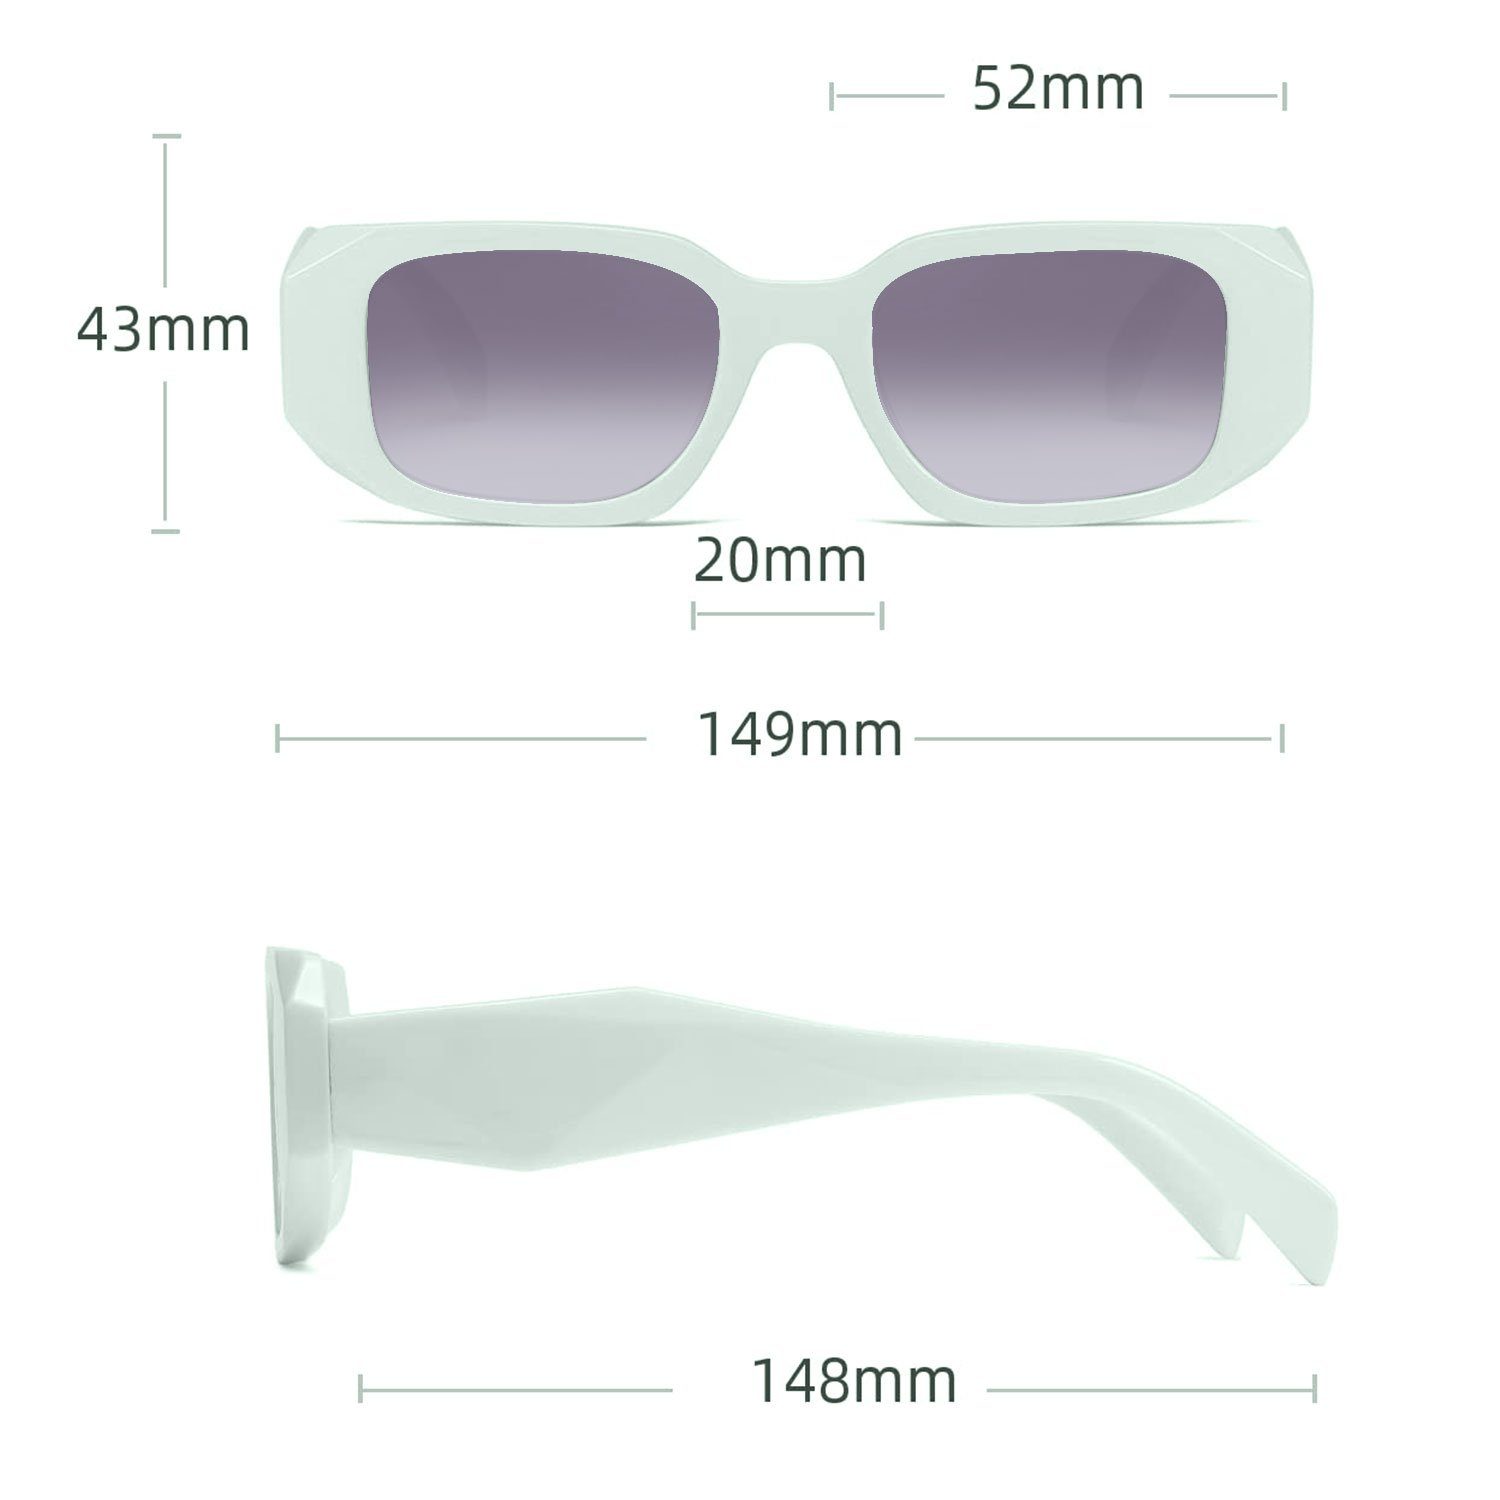 MAGICSHE Sonnenbrille Sonnenbrille Rechteckige Mode Retro Sonnenbrillen beständige Grüner Kasten und Herren für Damen UV